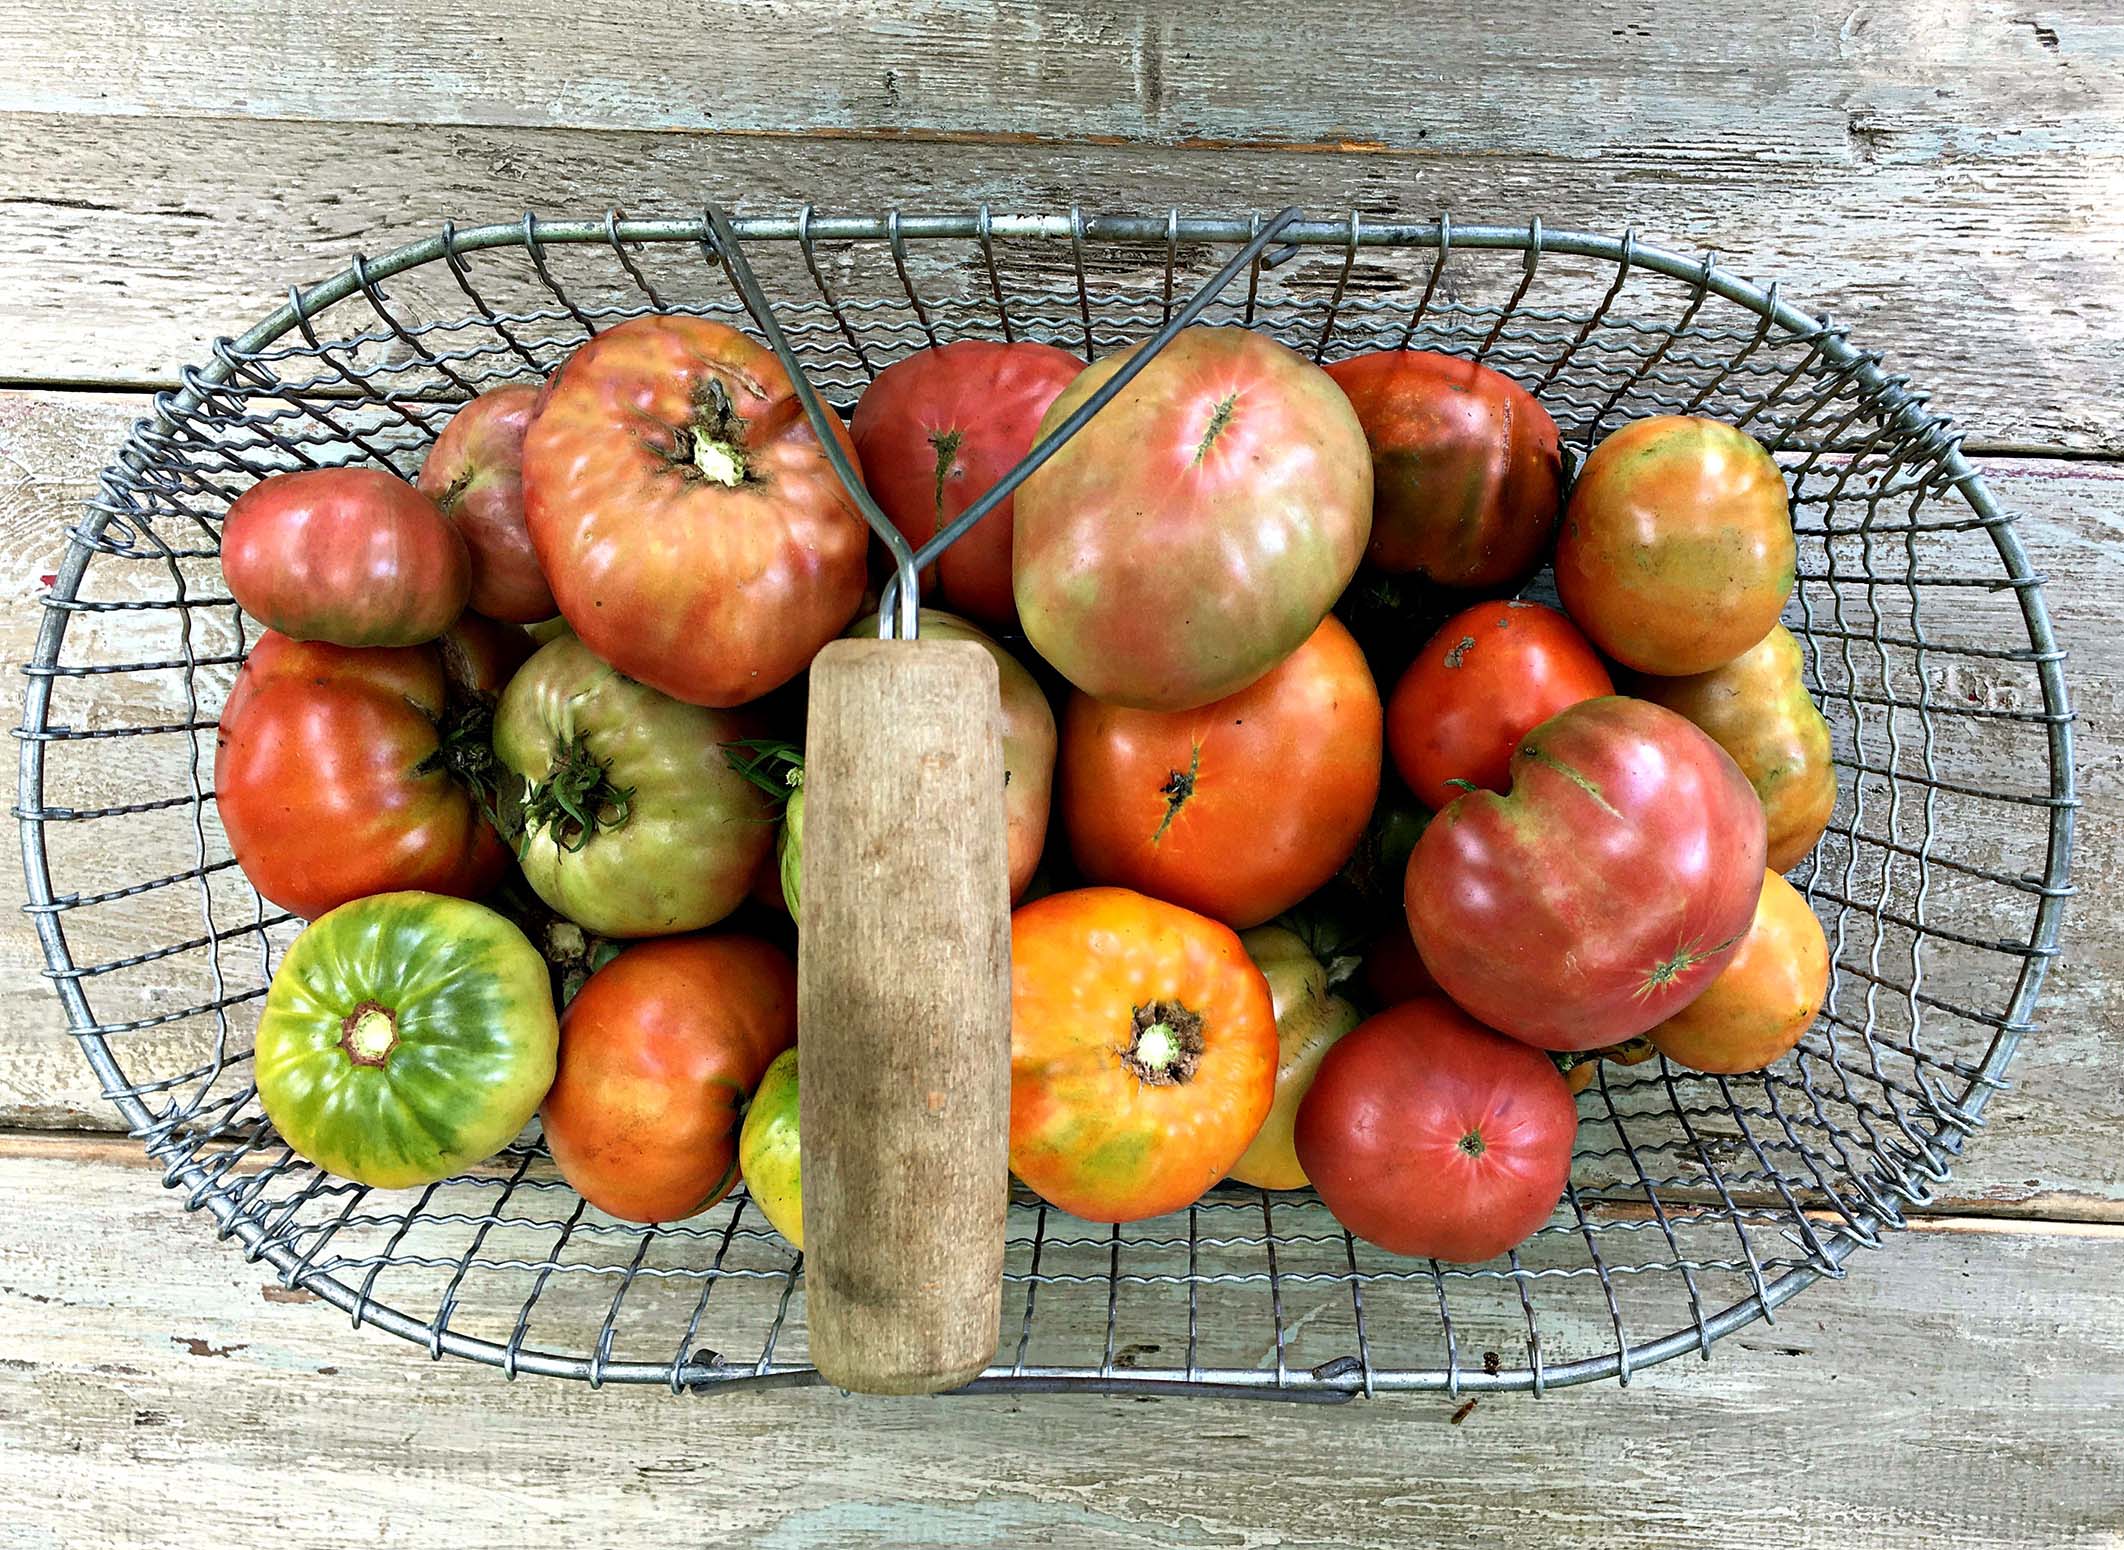 Tomato Basket